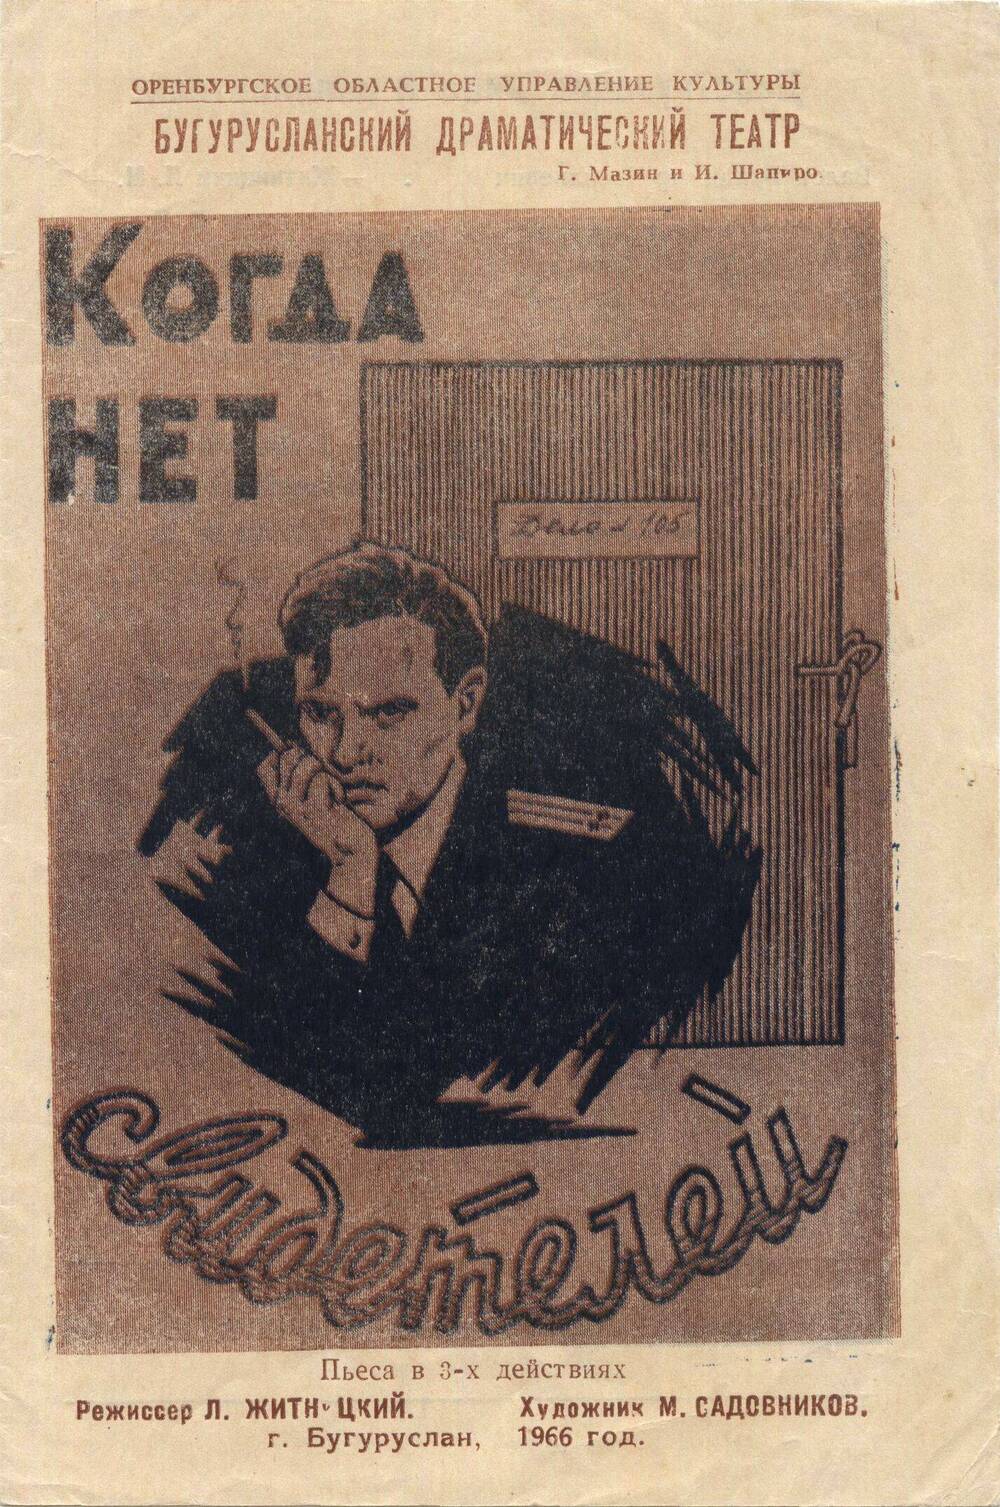 Программа к спектаклю Бугурусланского драматического театра в 3-х действиях Когда нет свидетелей, 1966 г.